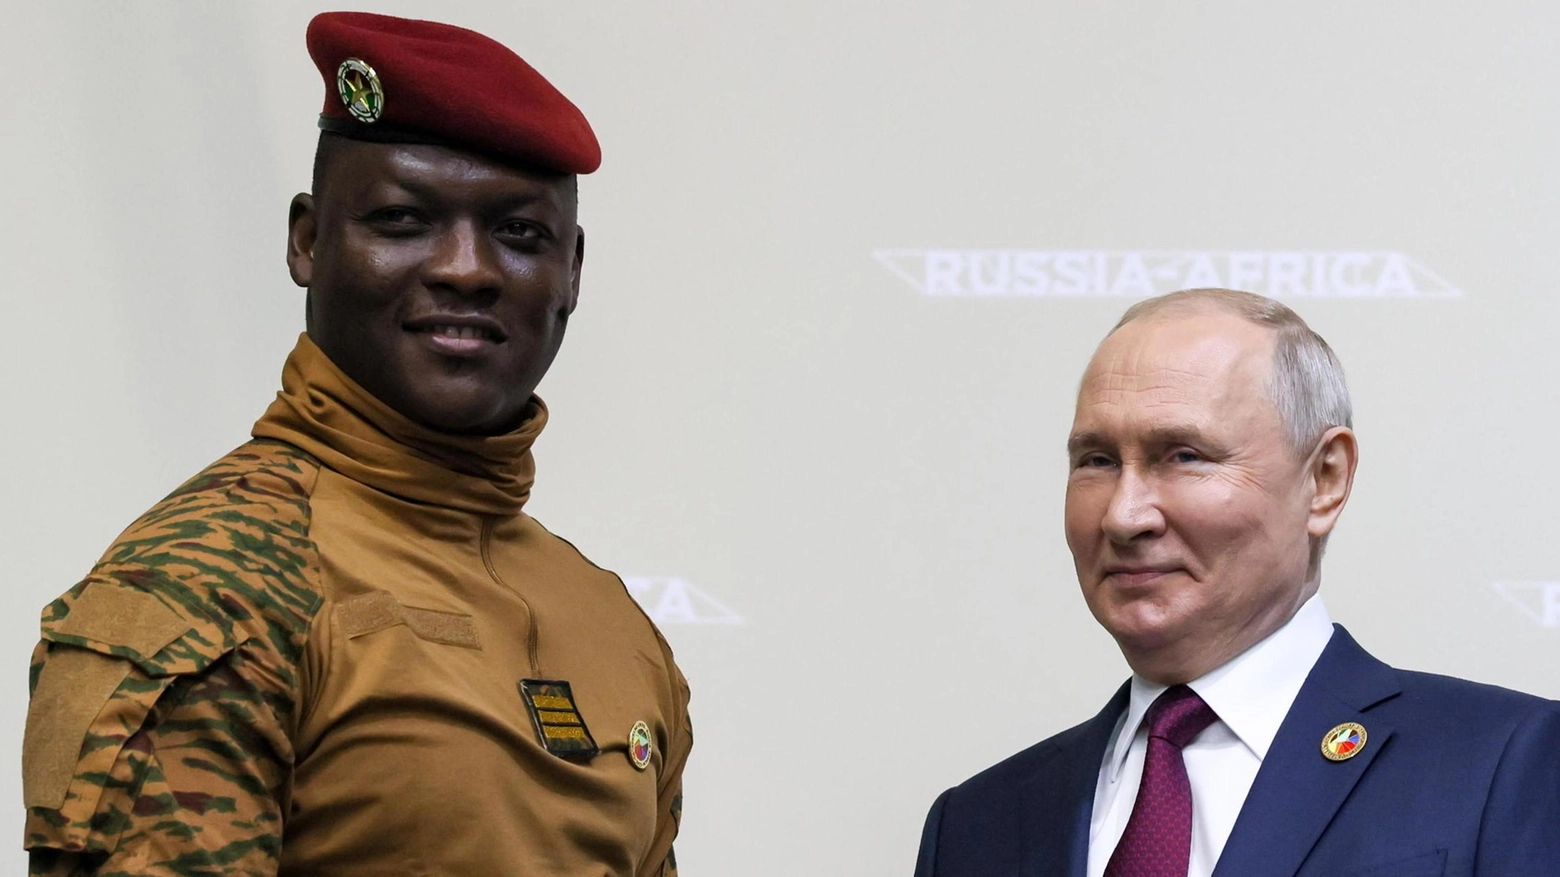 L’altro dossier sul tavolo  Putin e l’espansione in Africa  Golpe in Niger, c’è la Wagner